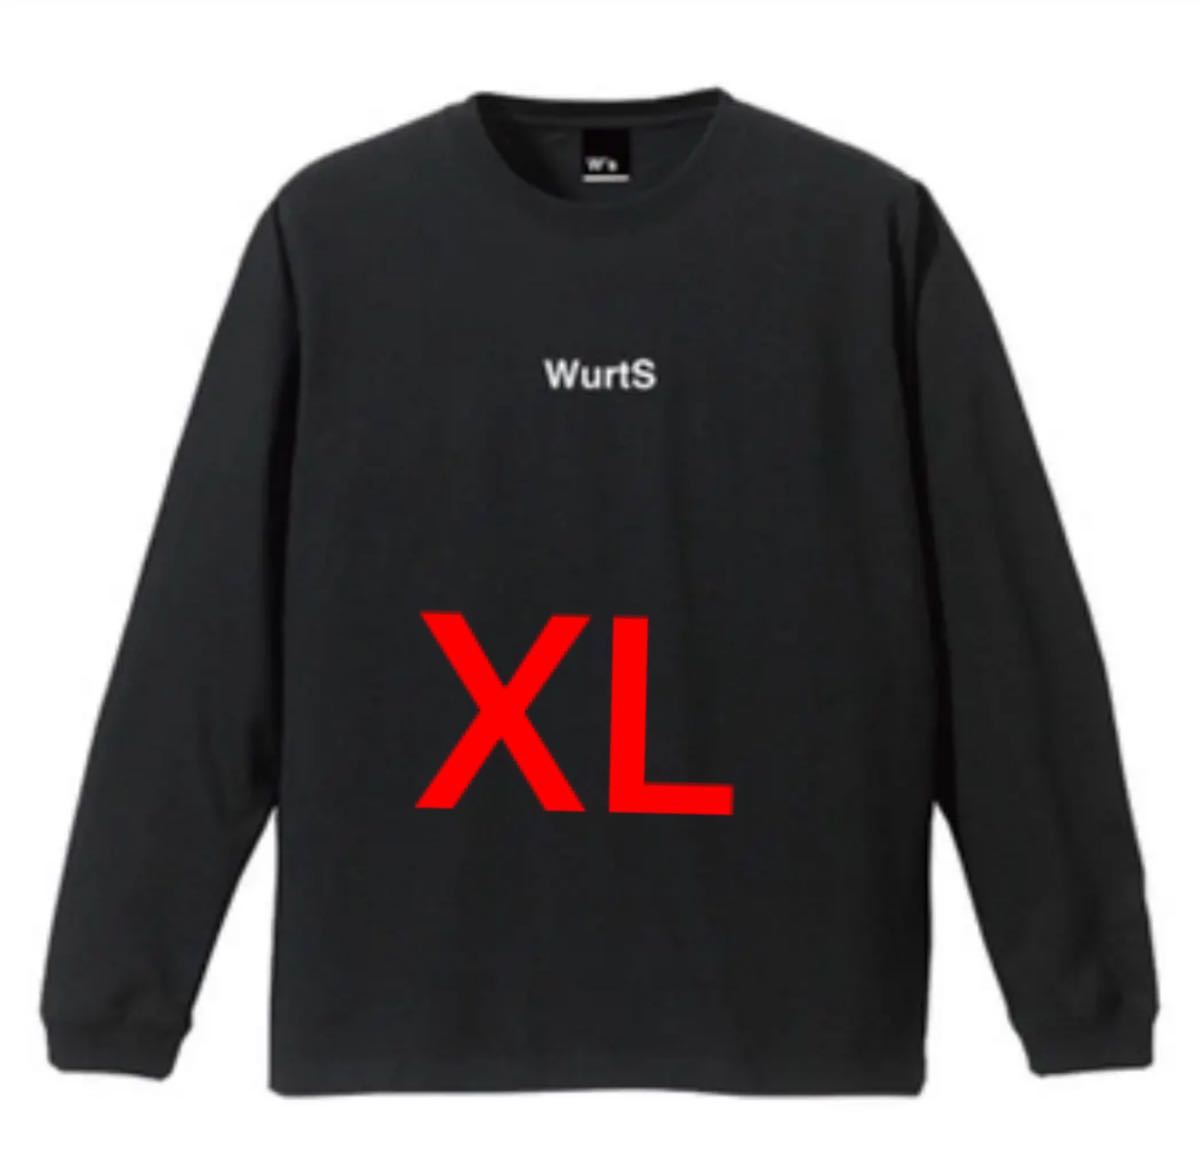 人気メーカー・ブランド 激安の 新品未開封 WurtS ロングスリーブ Tシャツ ブラック XL sannart.com sannart.com